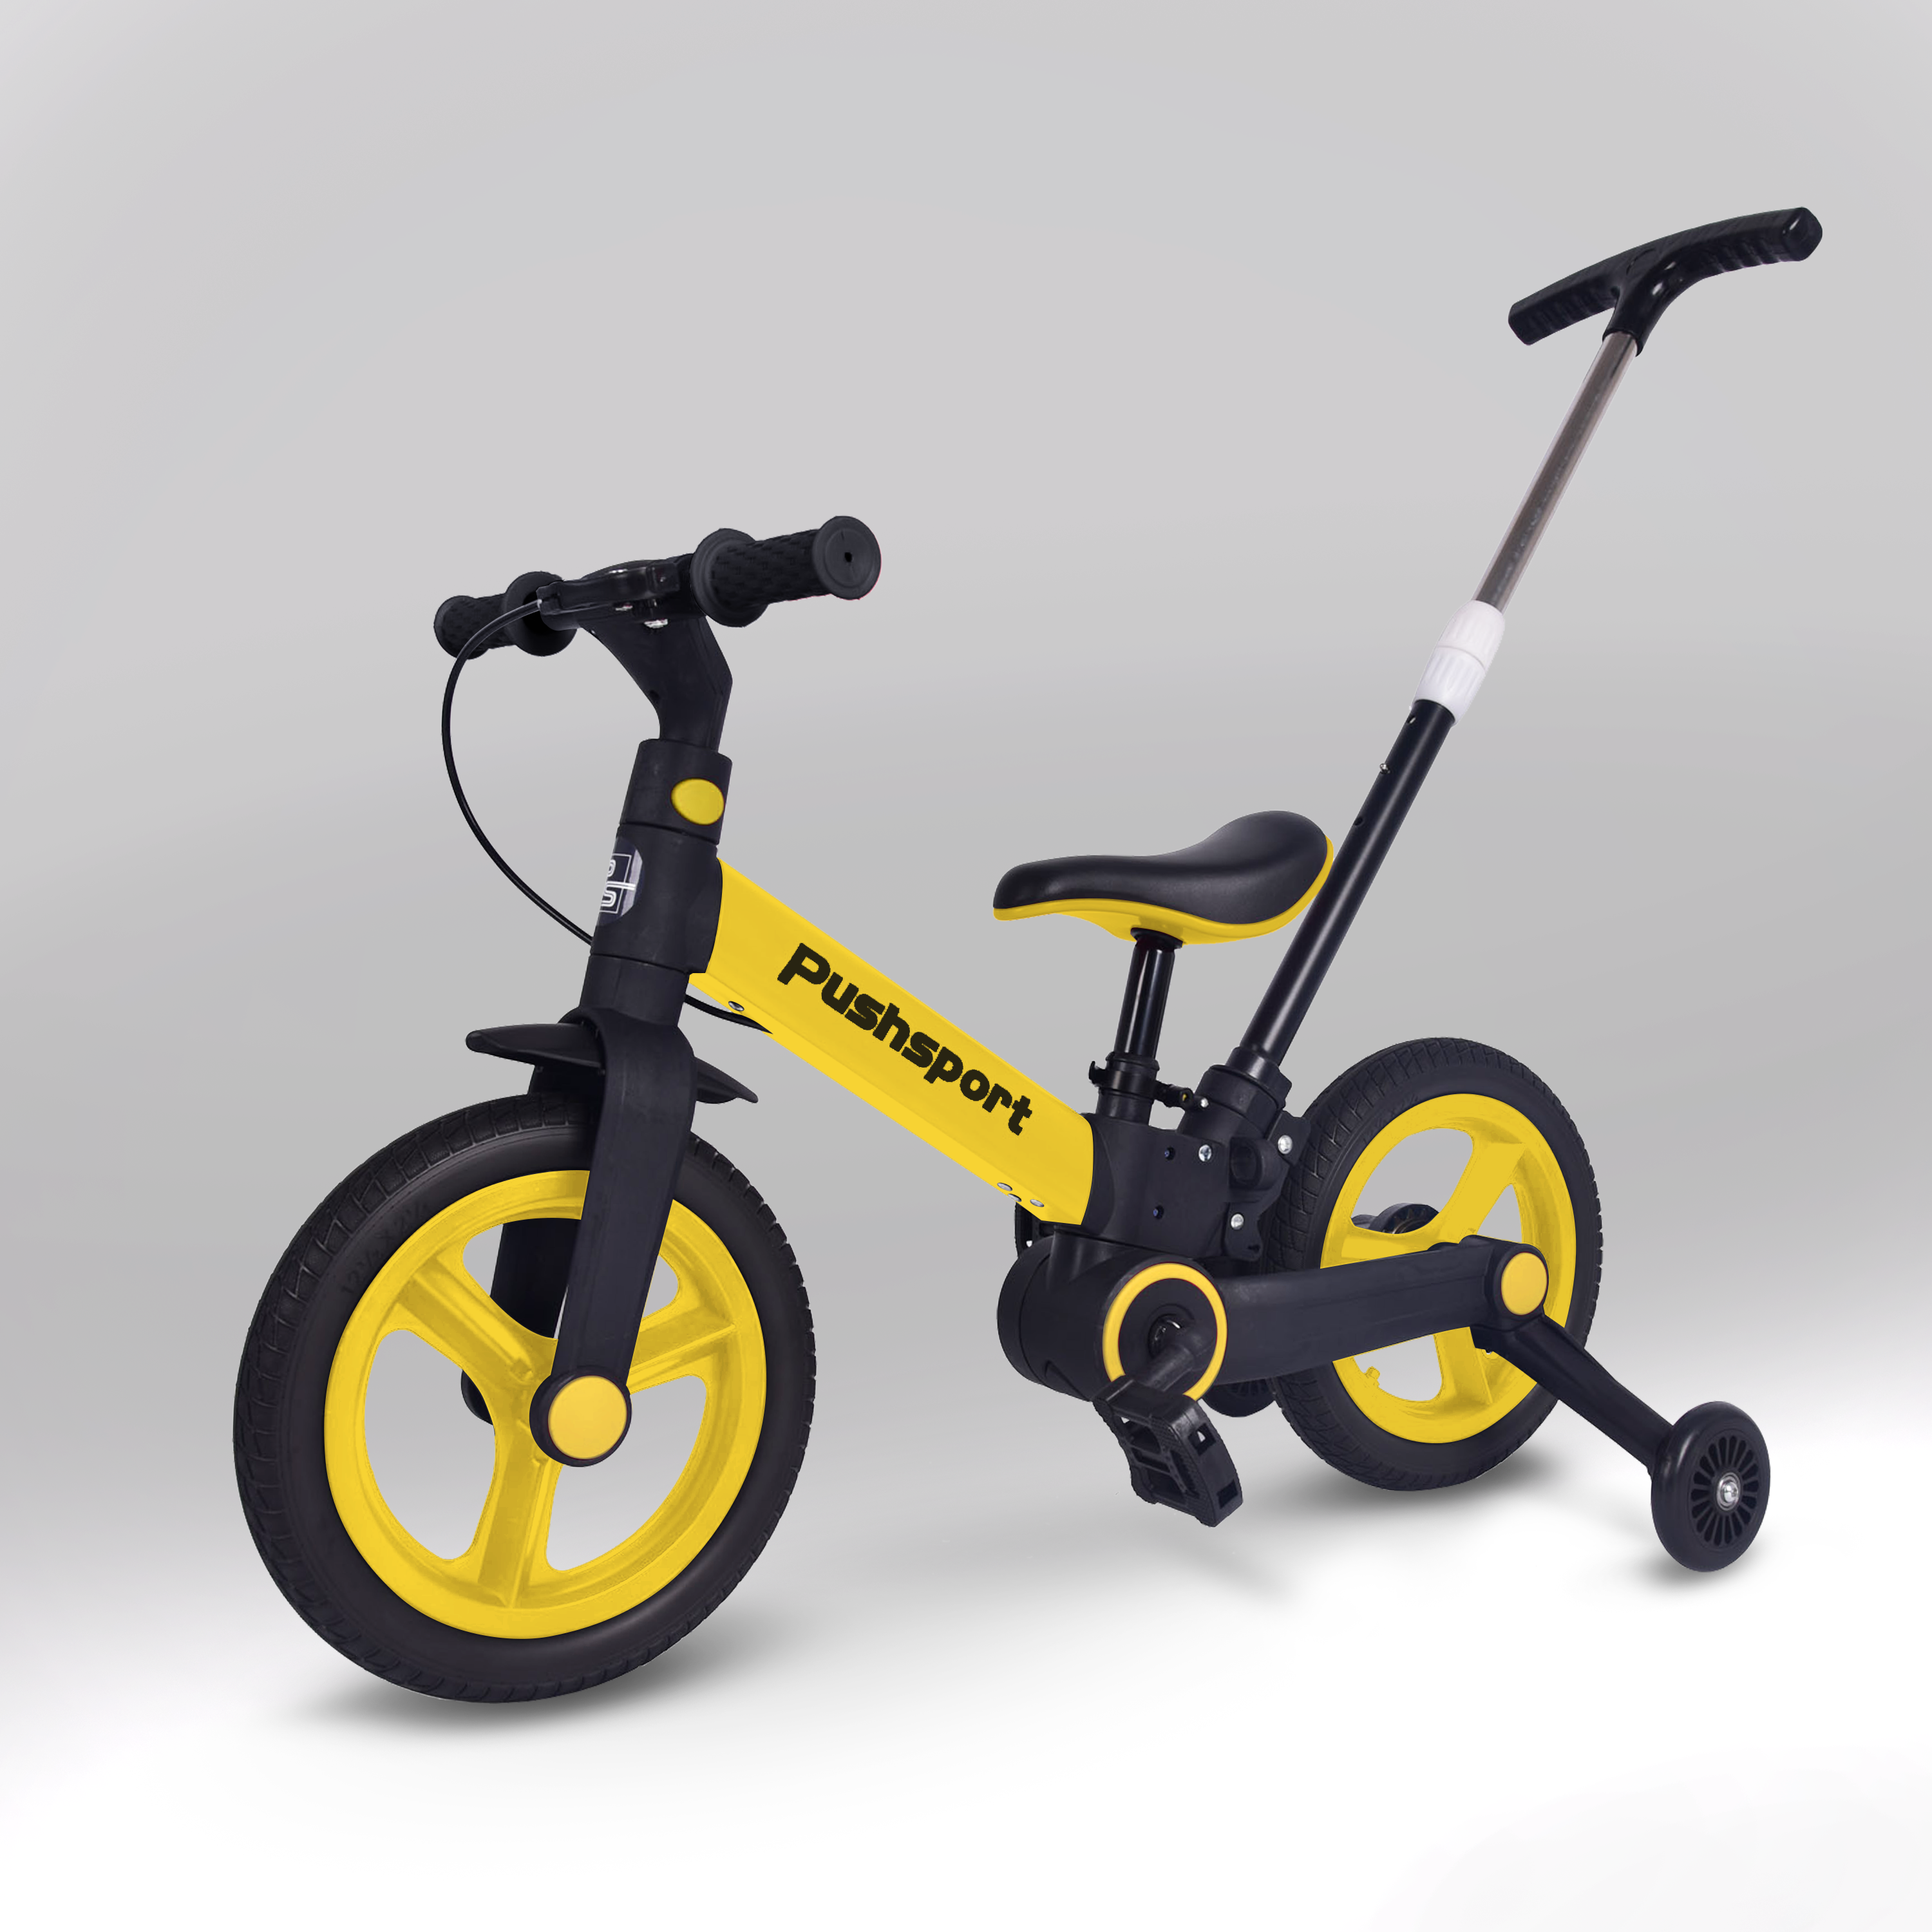 Детский двухколесный велосипед Pushsport желтый